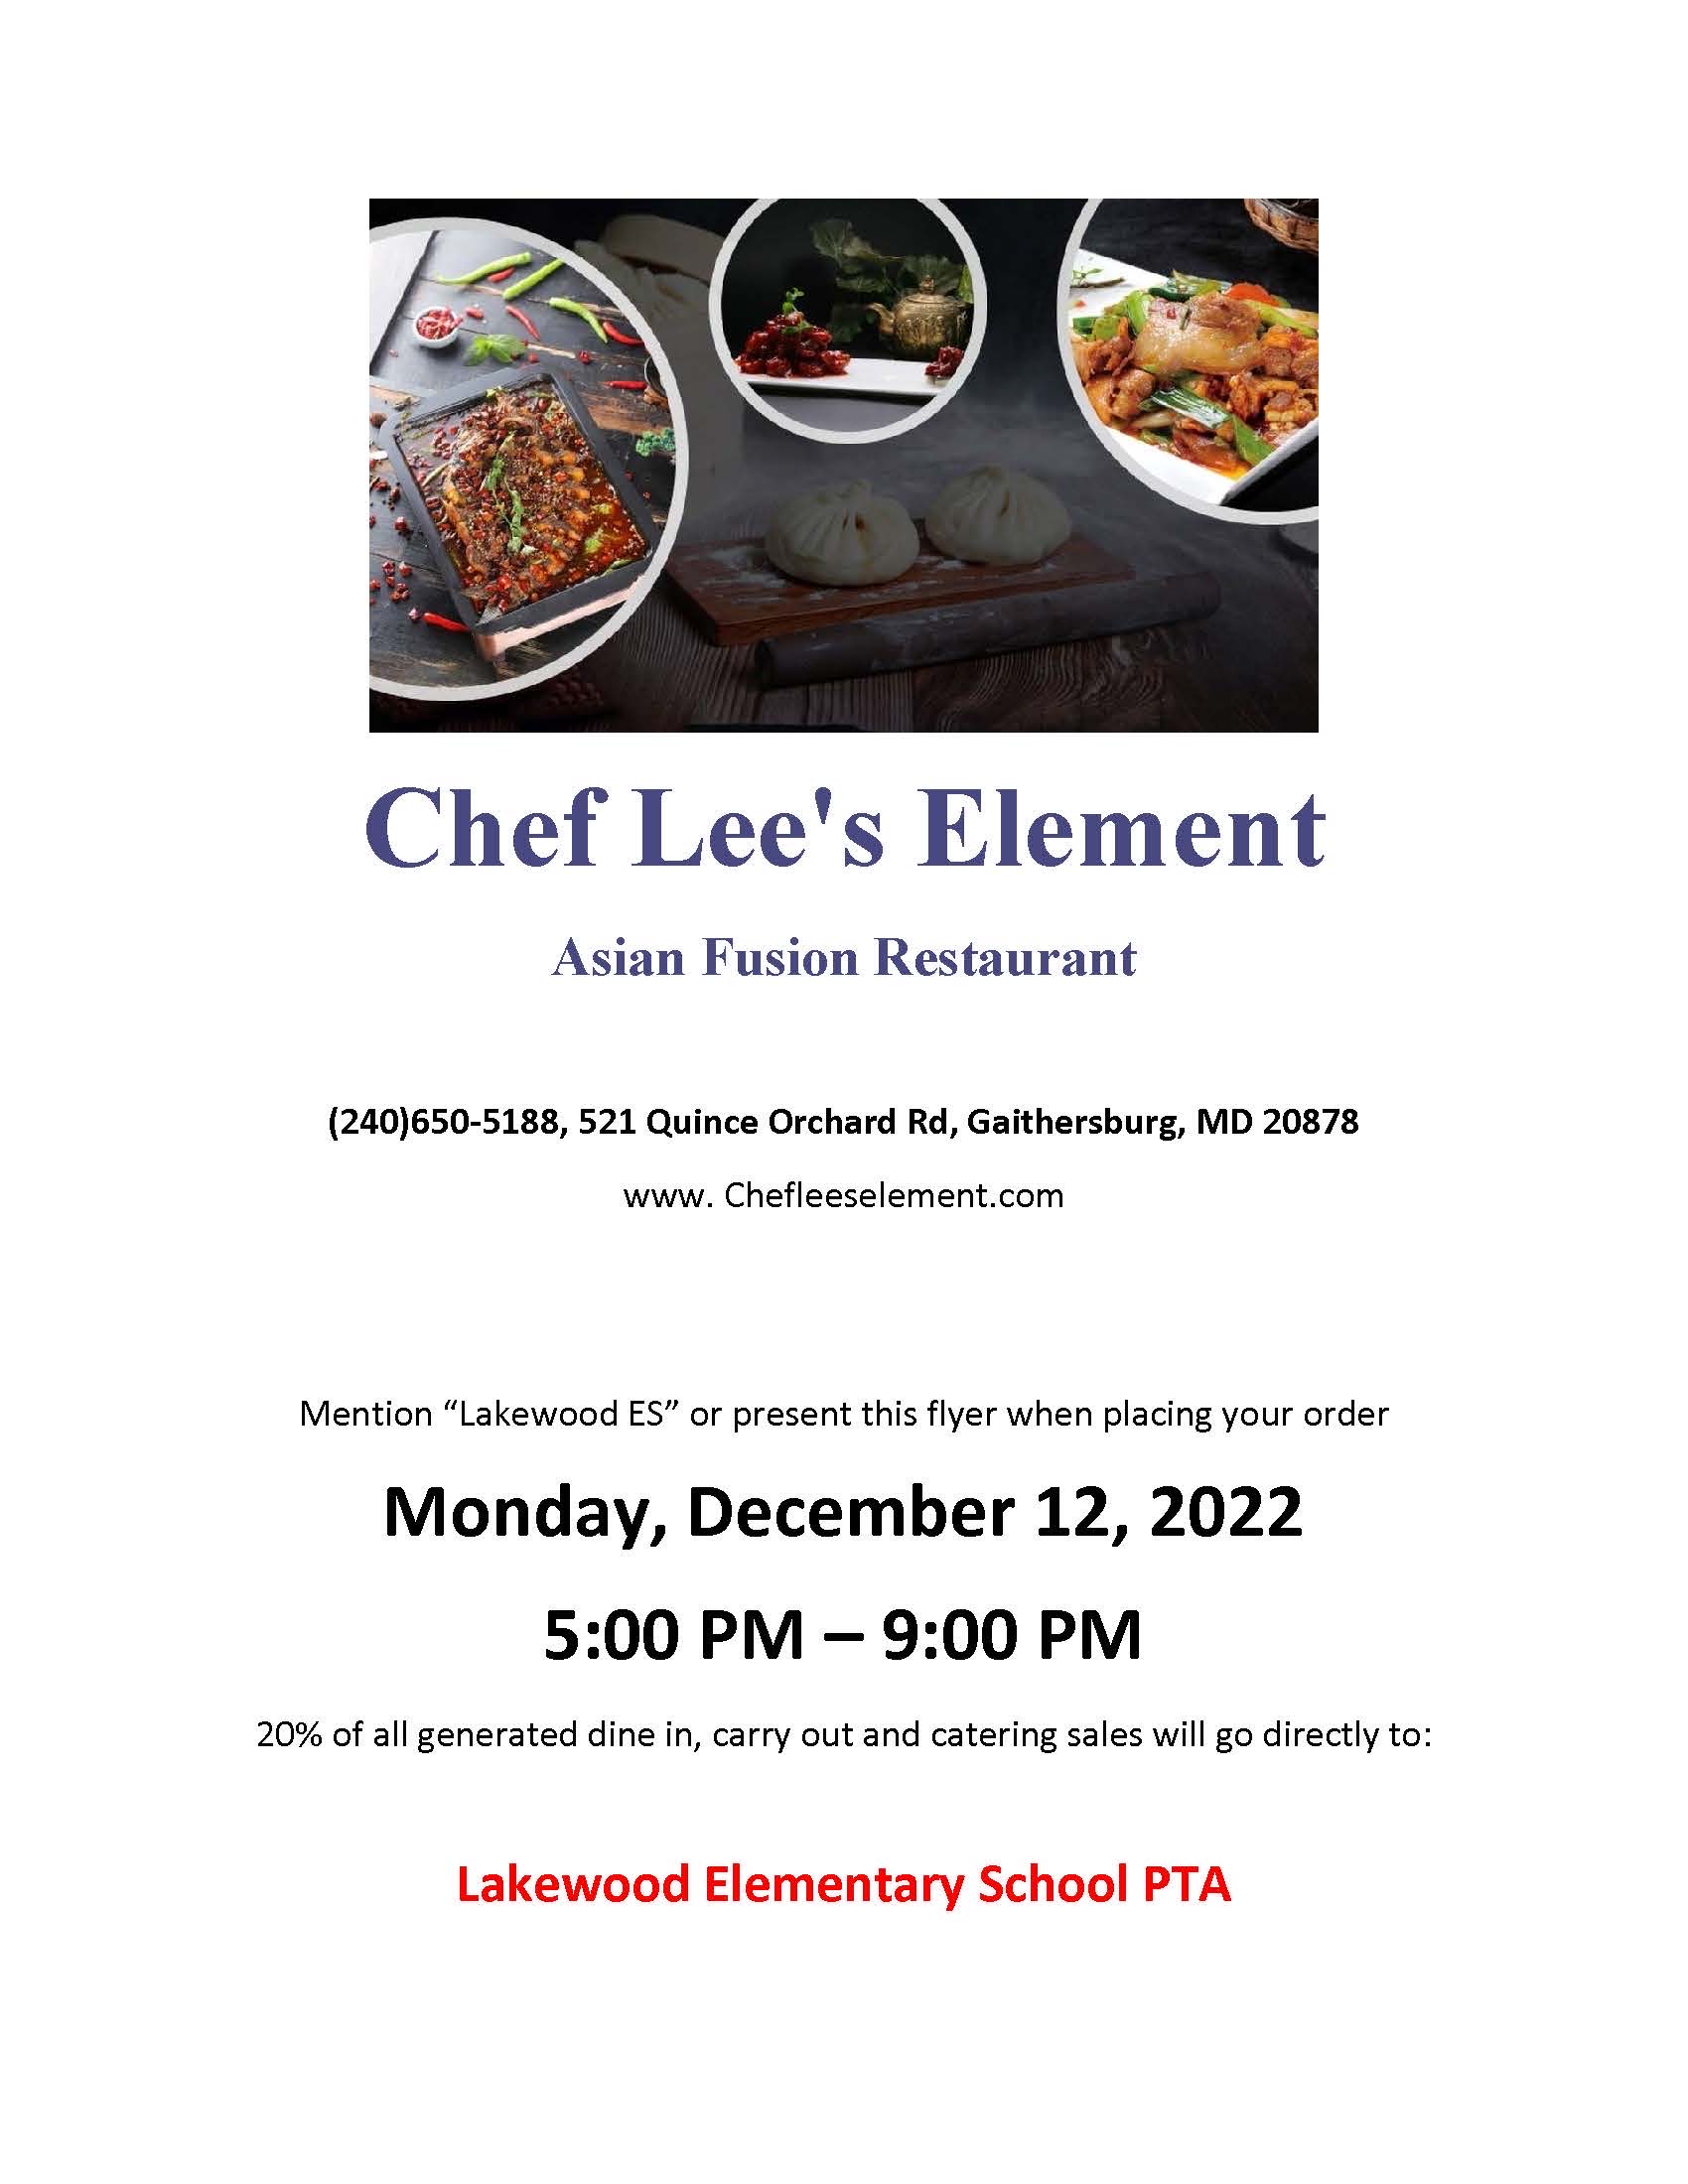 Chef Lee's Element | Lakewood ES